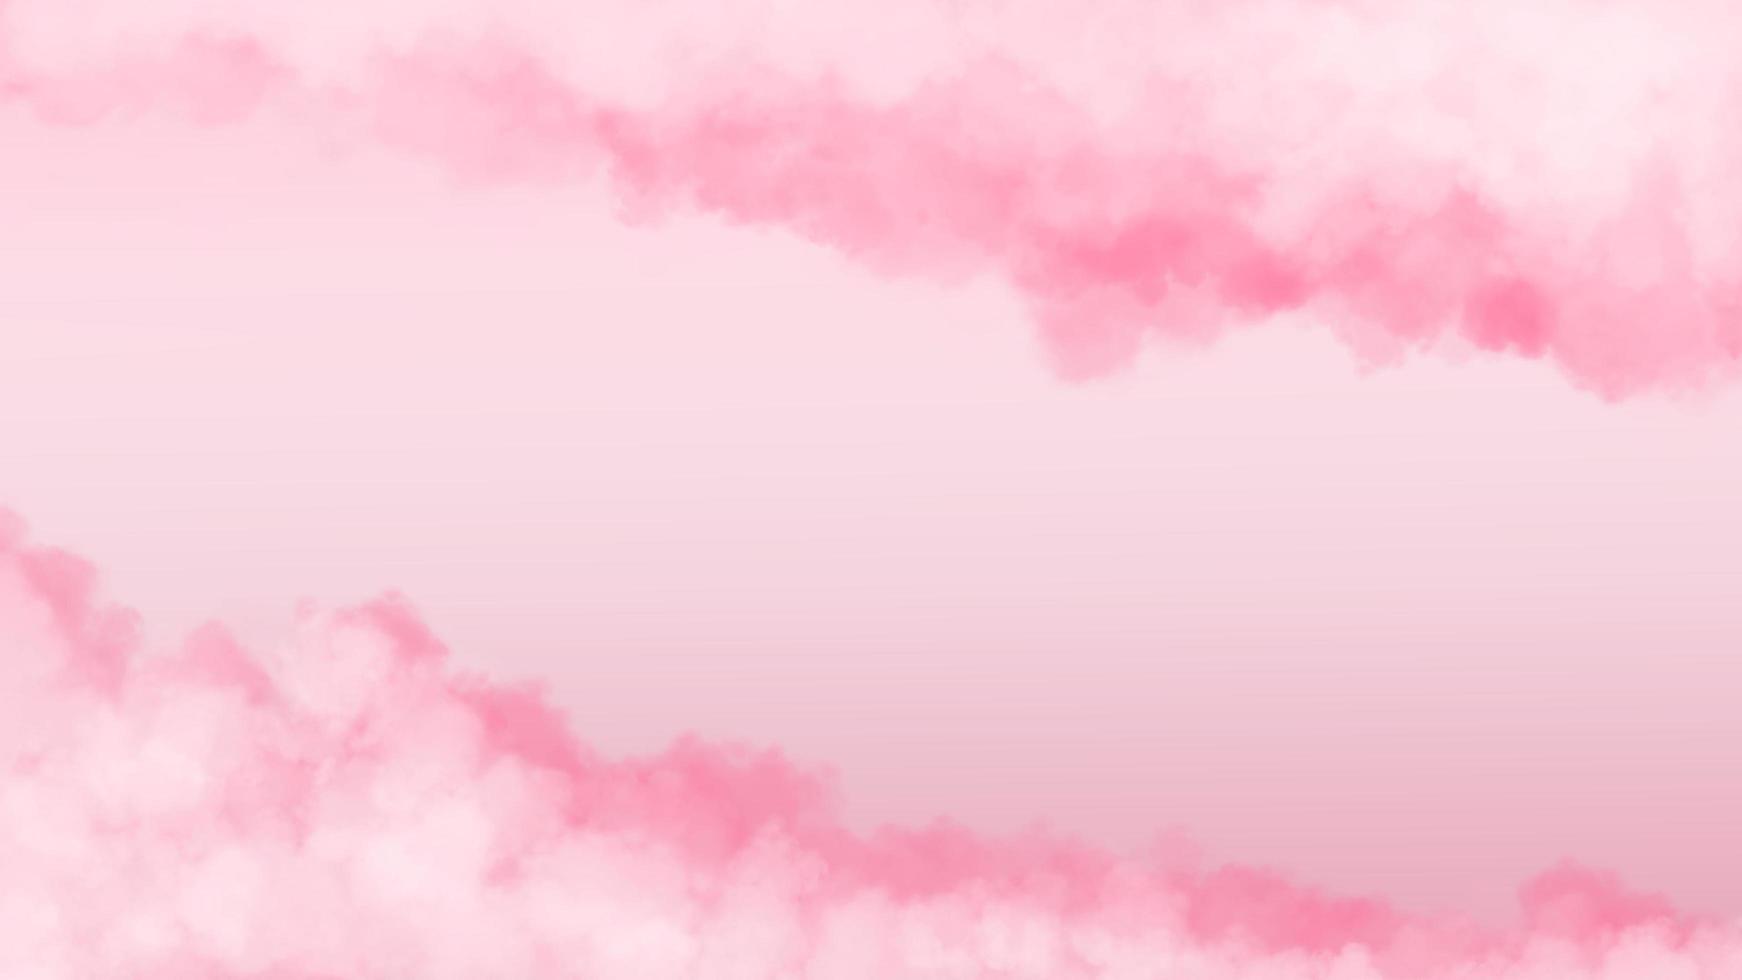 ilustración realista de nubes esponjosas rosas. dulce fondo para su contenido como el día de san valentín, boda, amor, pareja, romance, romántico, tarjeta de felicitación, invitación, promoción, publicidad, etc. foto